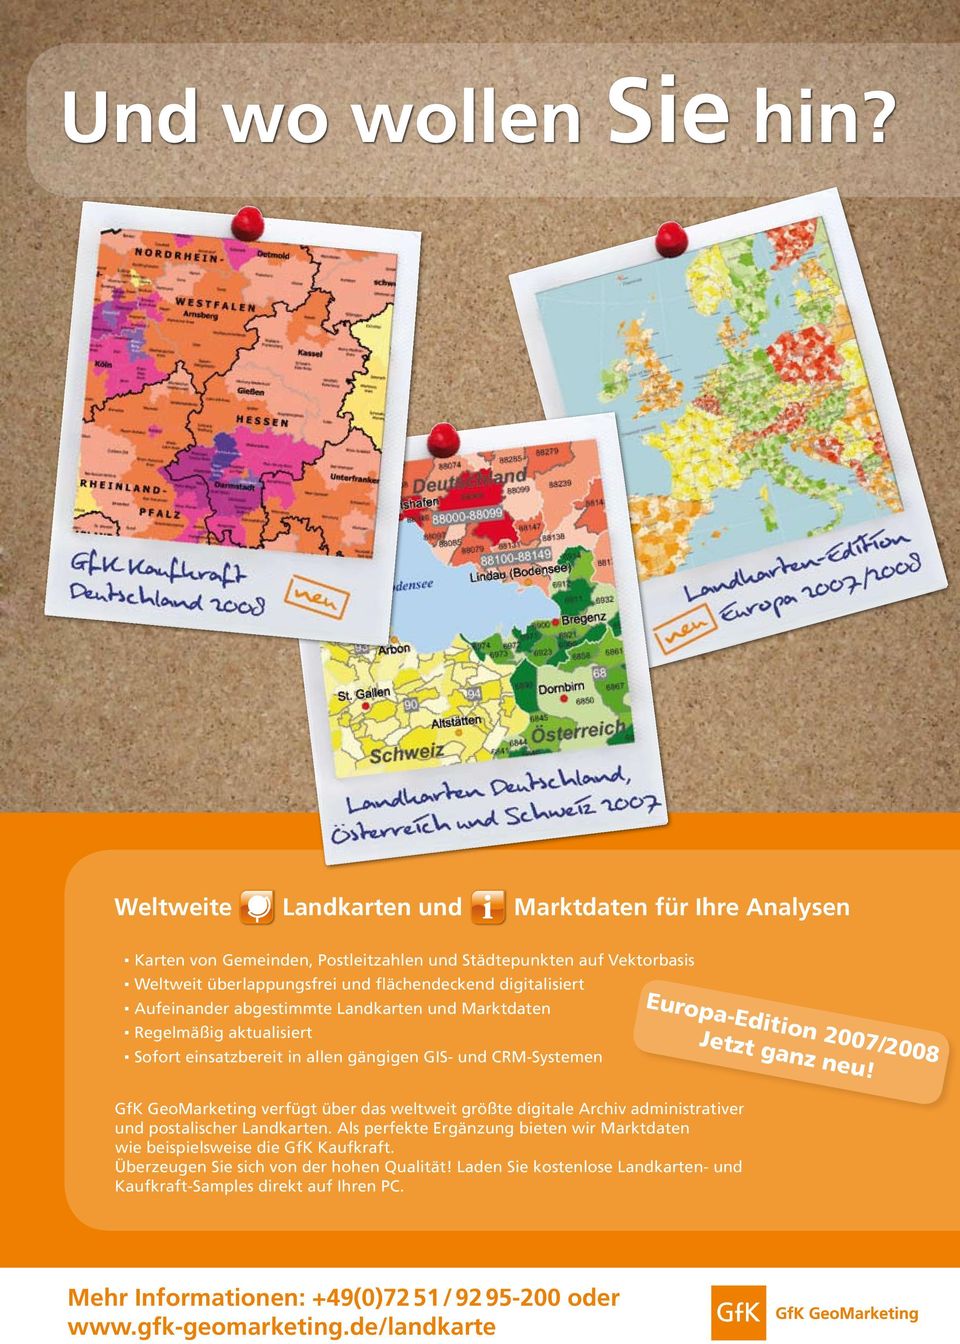 Aufeinander abgestimmte Landkarten und Marktdaten Regelmäßig aktualisiert Sofort einsatzbereit in allen gängigen GIS- und CRM-Systemen Europa-Edition 2007/2008 Jetzt ganz neu!